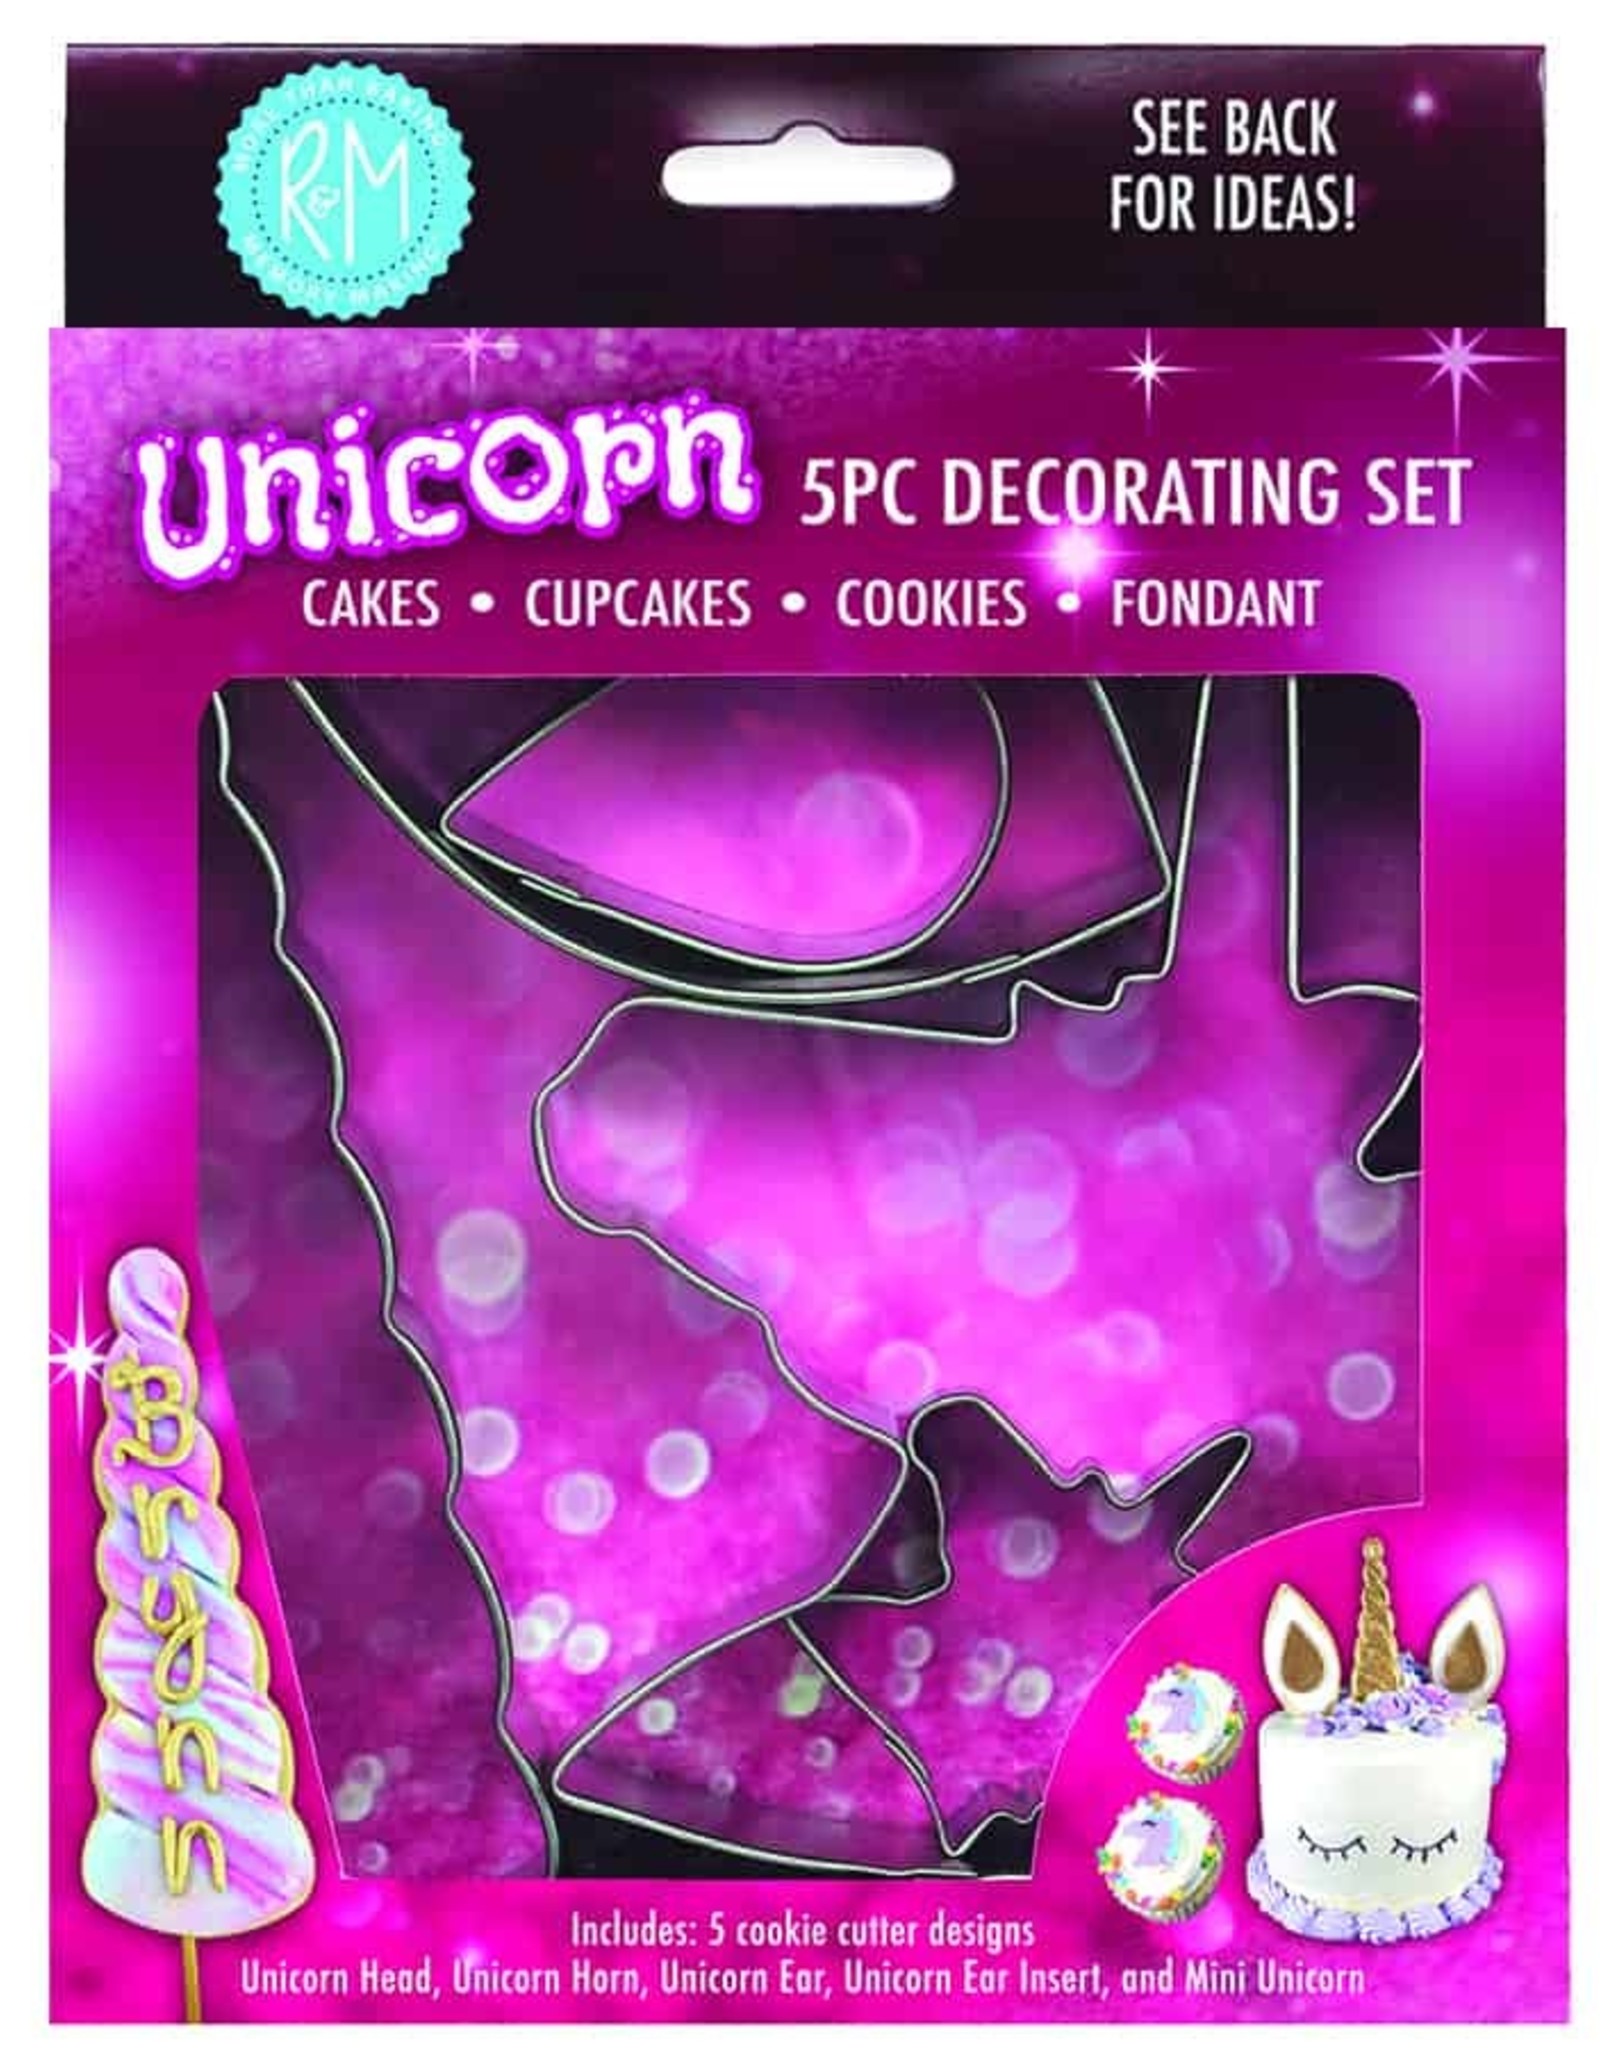 Unicorn Decorating Set 5 pc